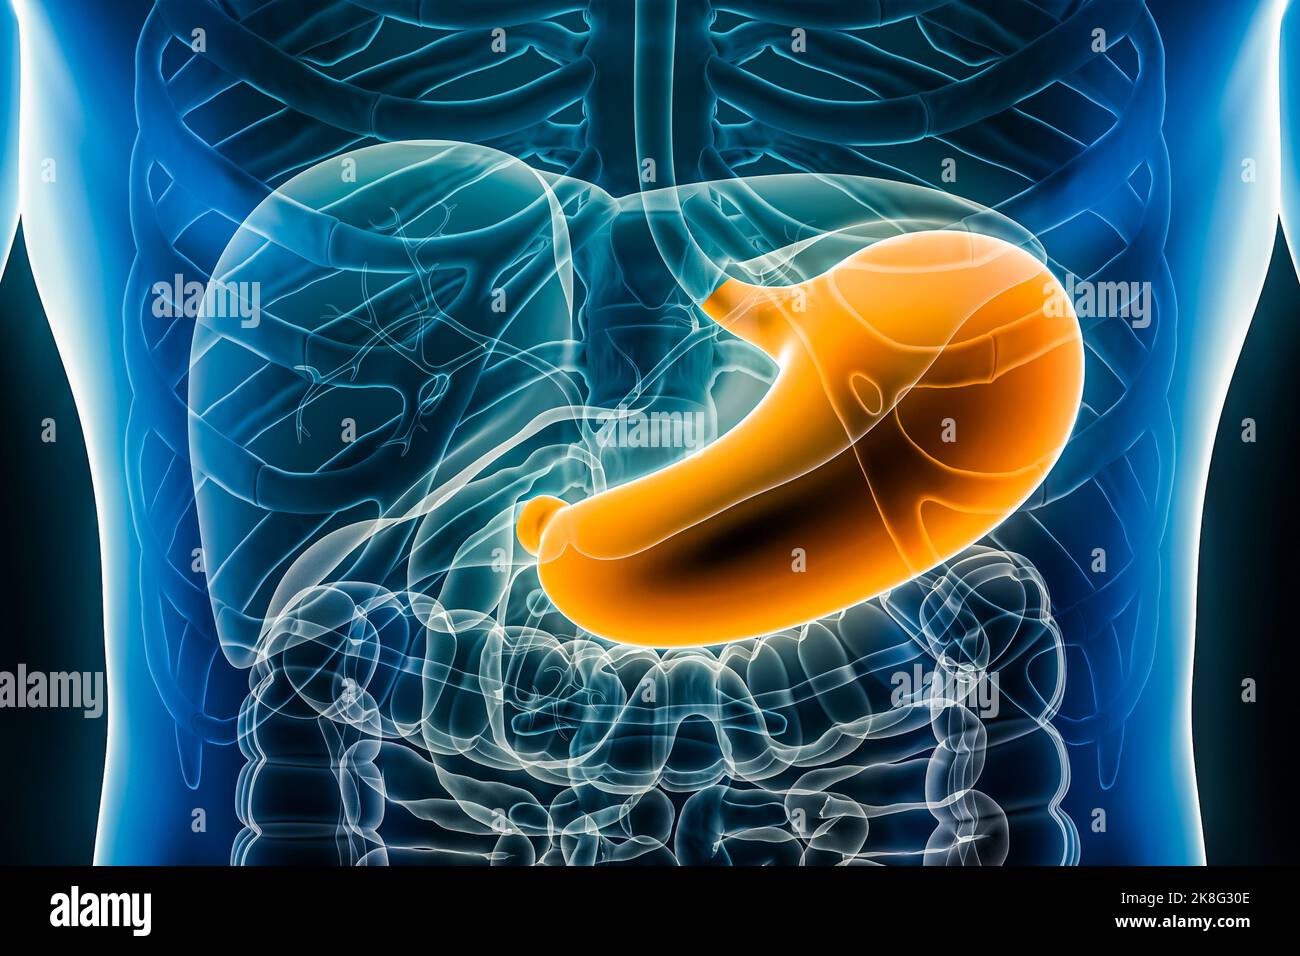 Illustrazione del rendering dello stomaco 3D primo piano della vista anteriore o anteriore. Organo del sistema digestivo umano. Anatomia, medicina, biologia, scienza, sanità Foto Stock